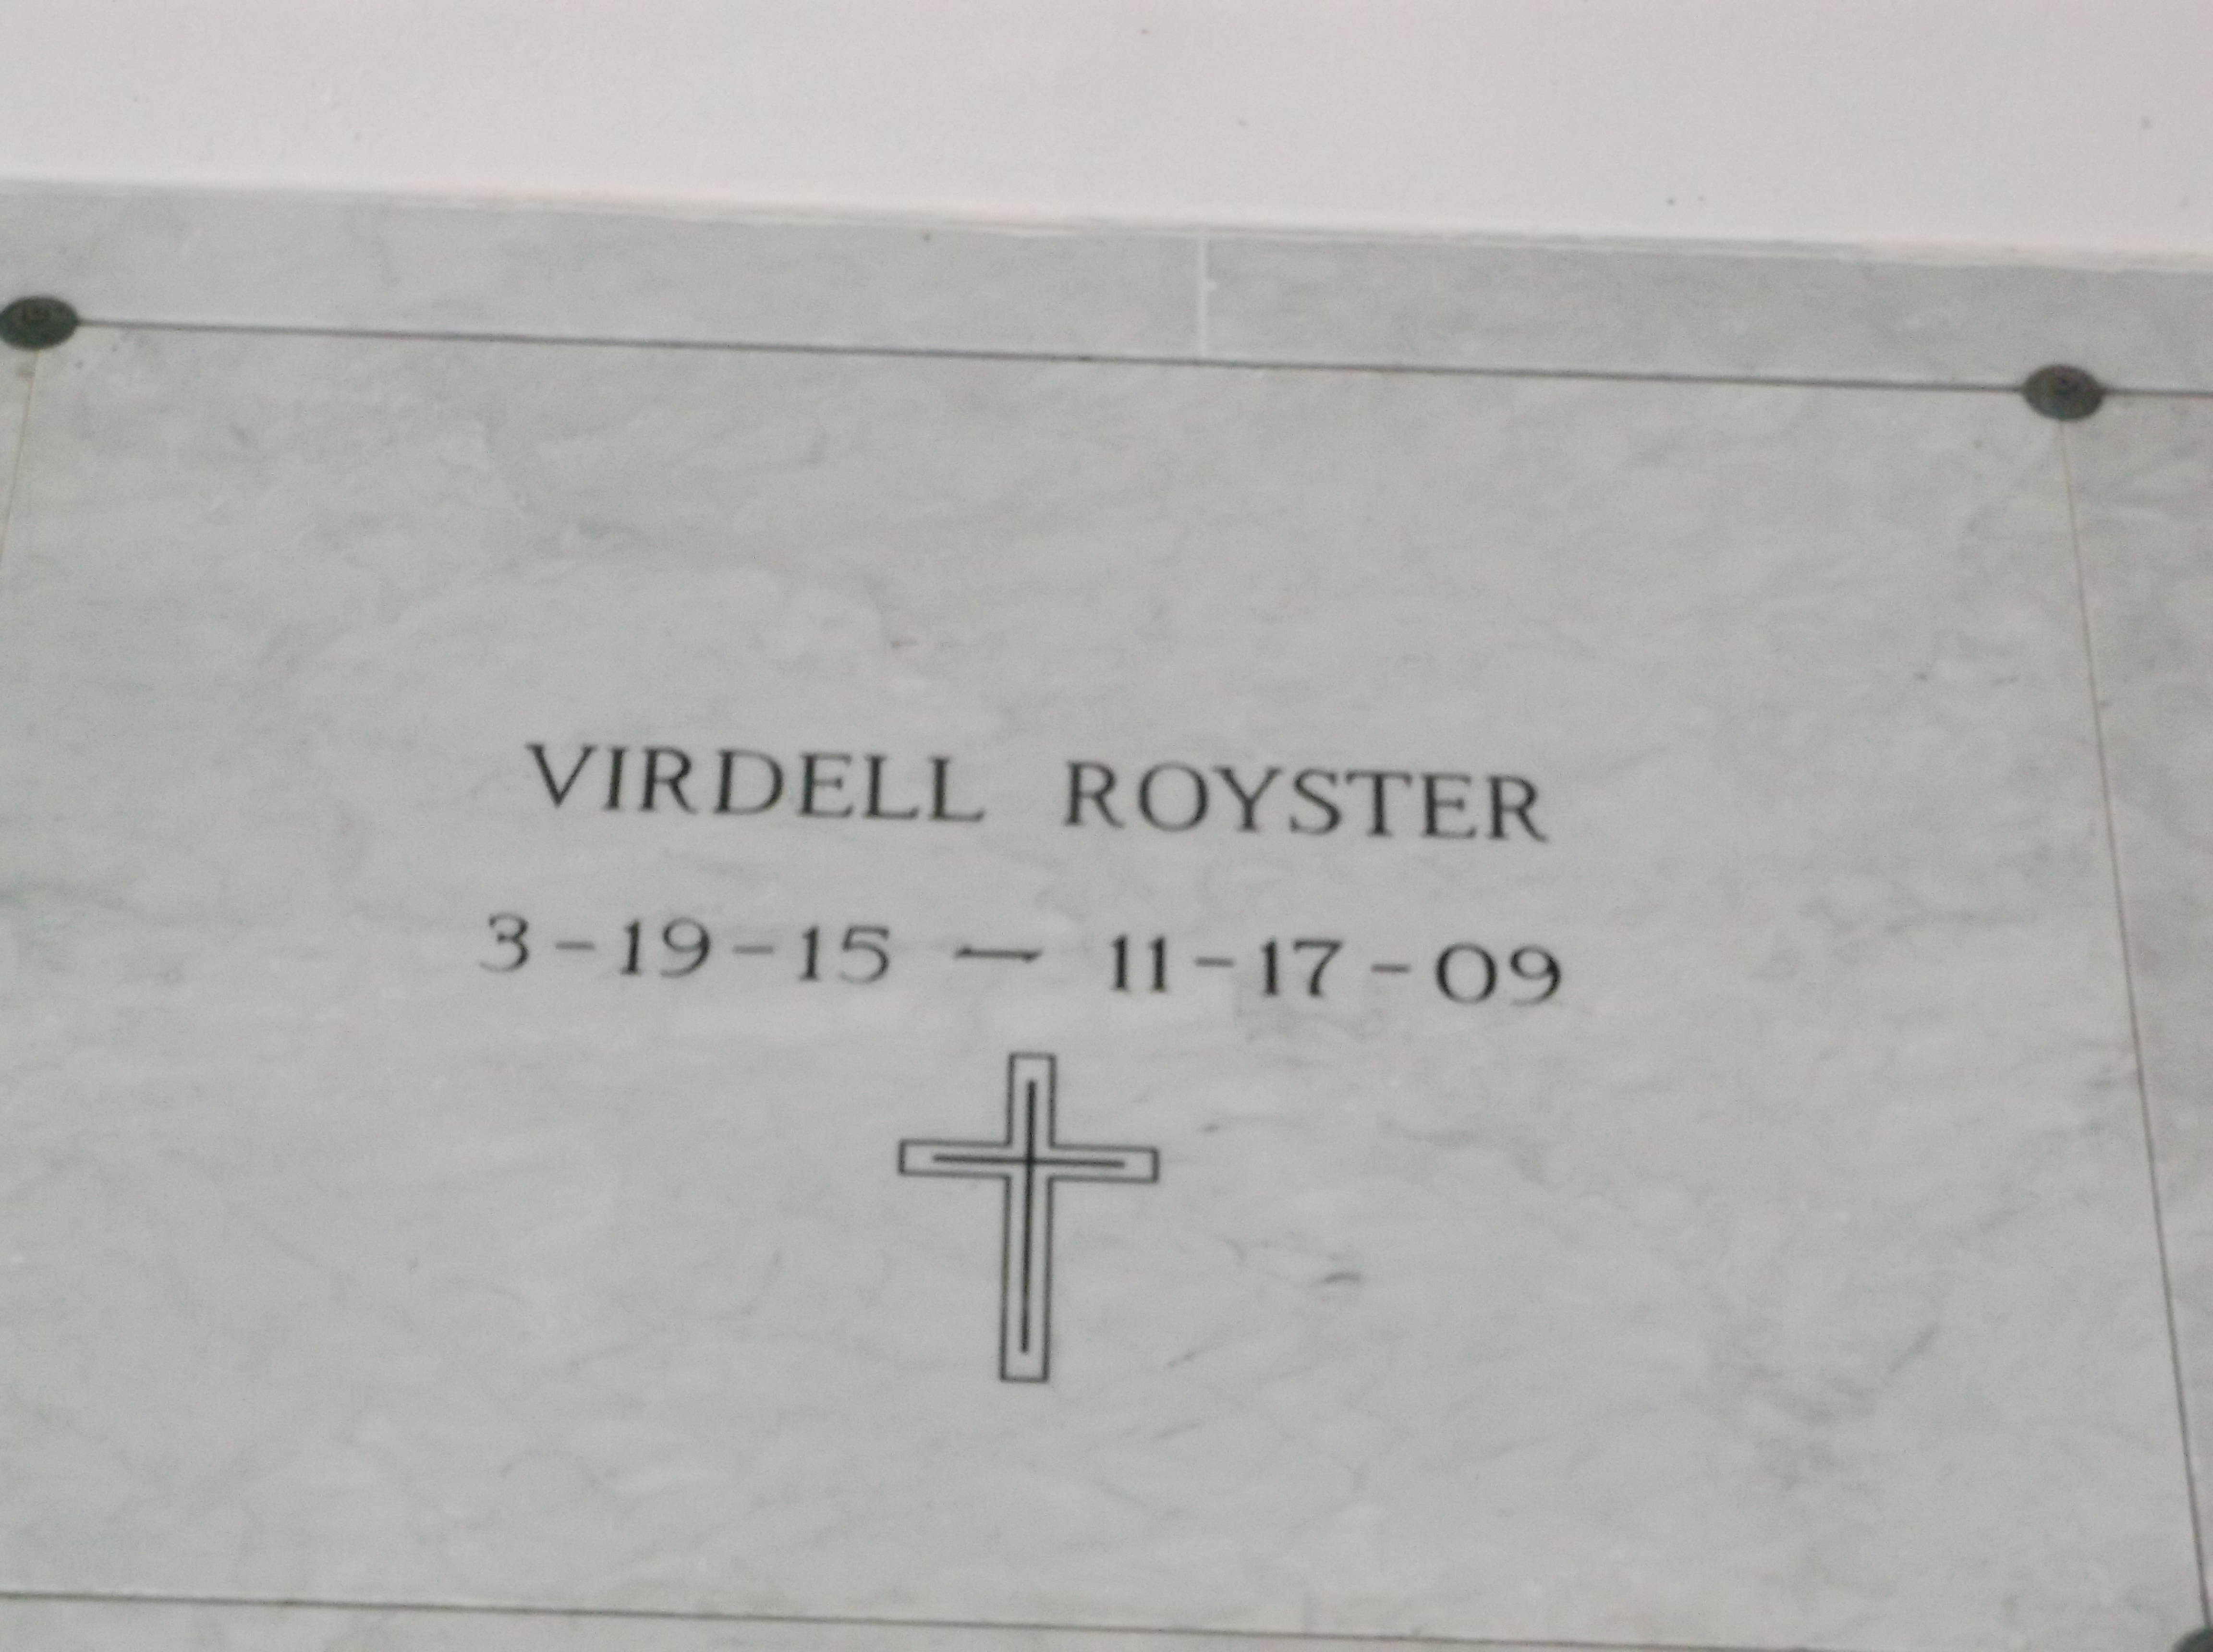 Virdell Royster